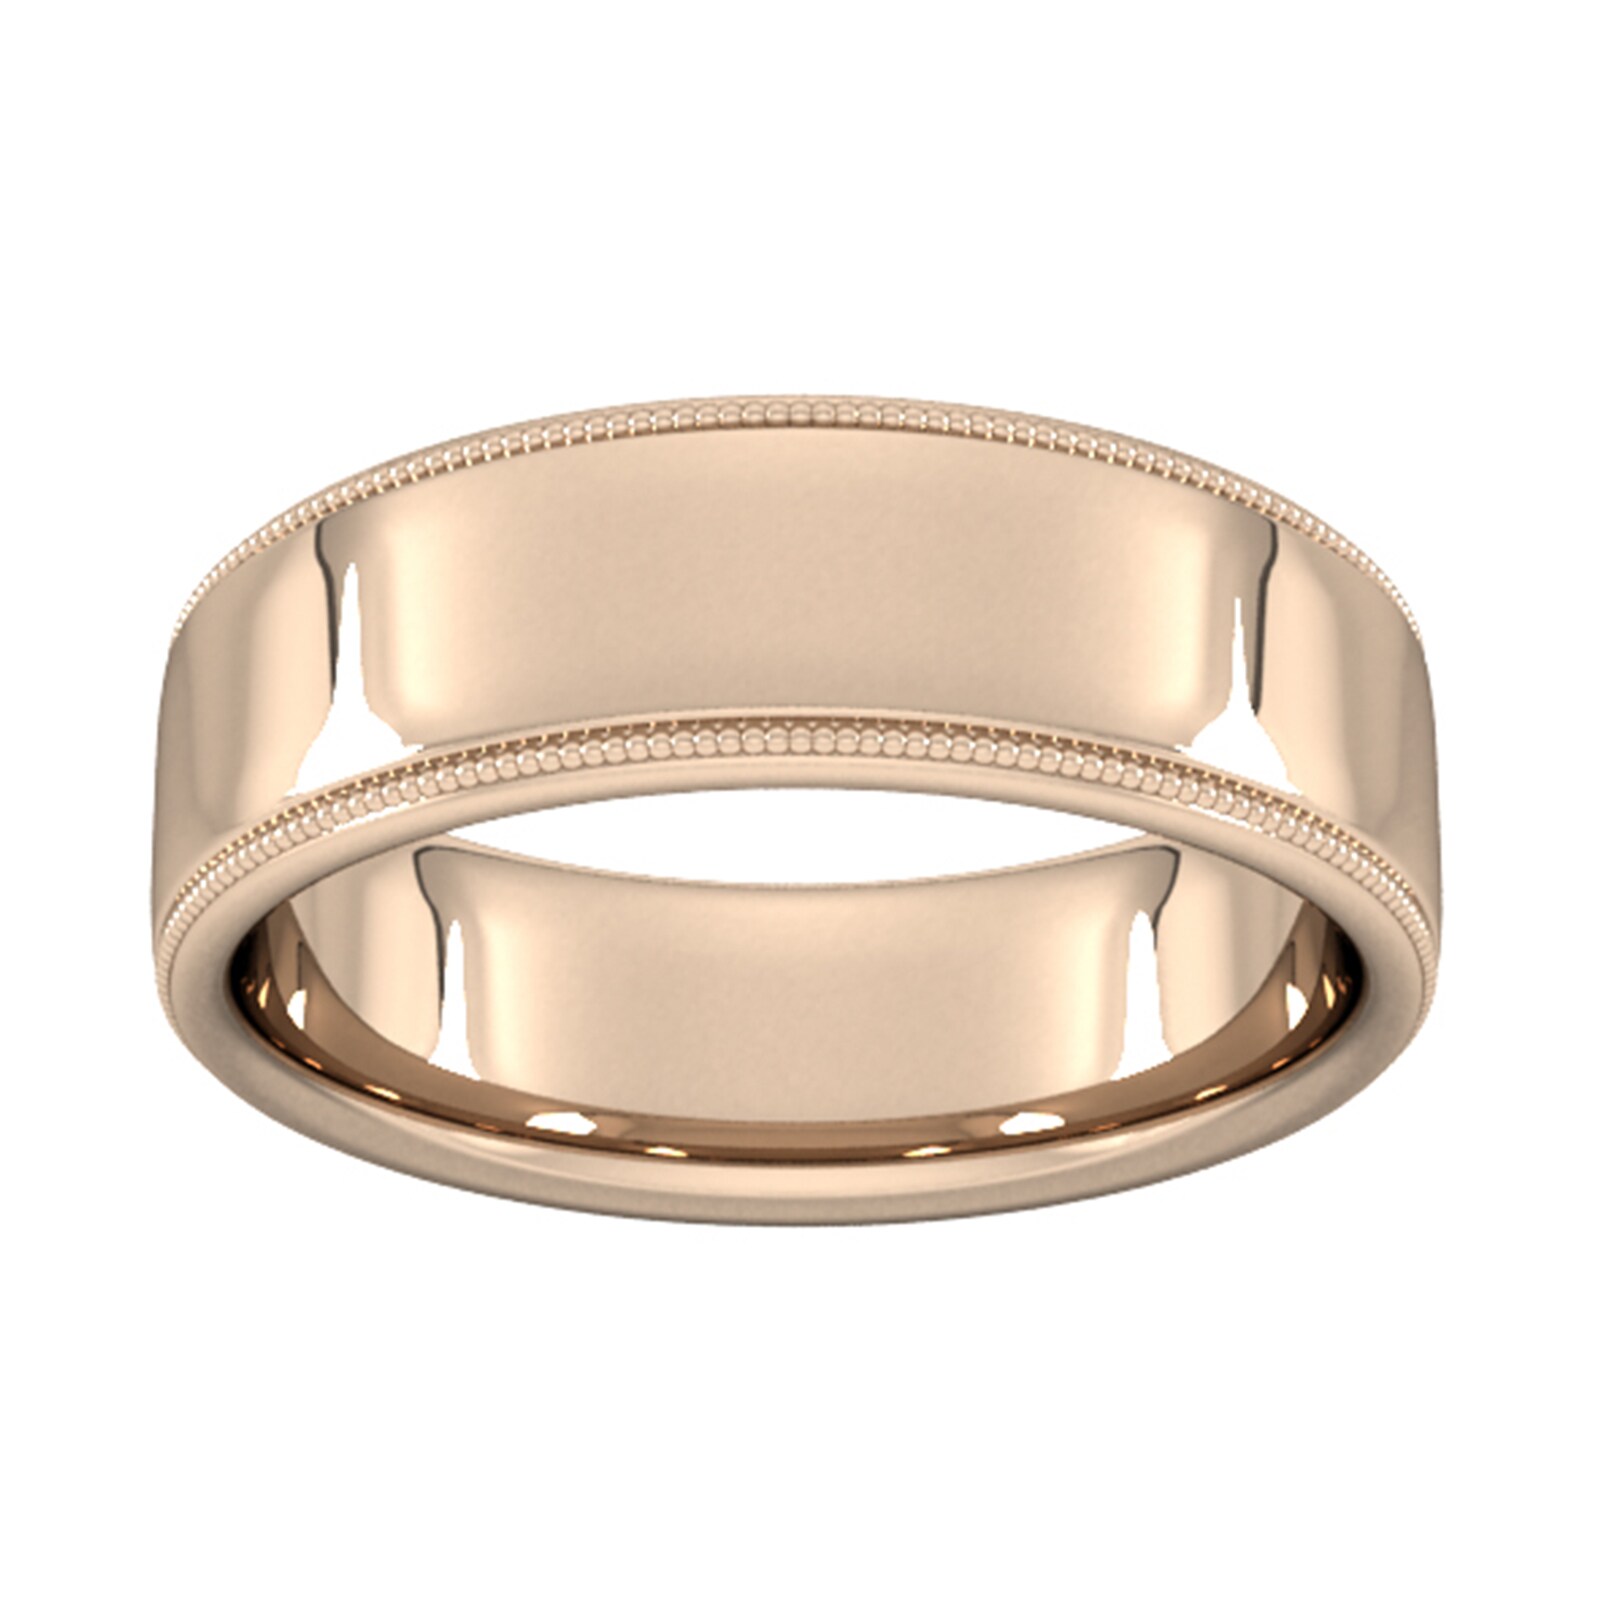 7mm Slight Court Heavy Milgrain Edge Wedding Ring In 18 Carat Rose Gold - Ring Size T